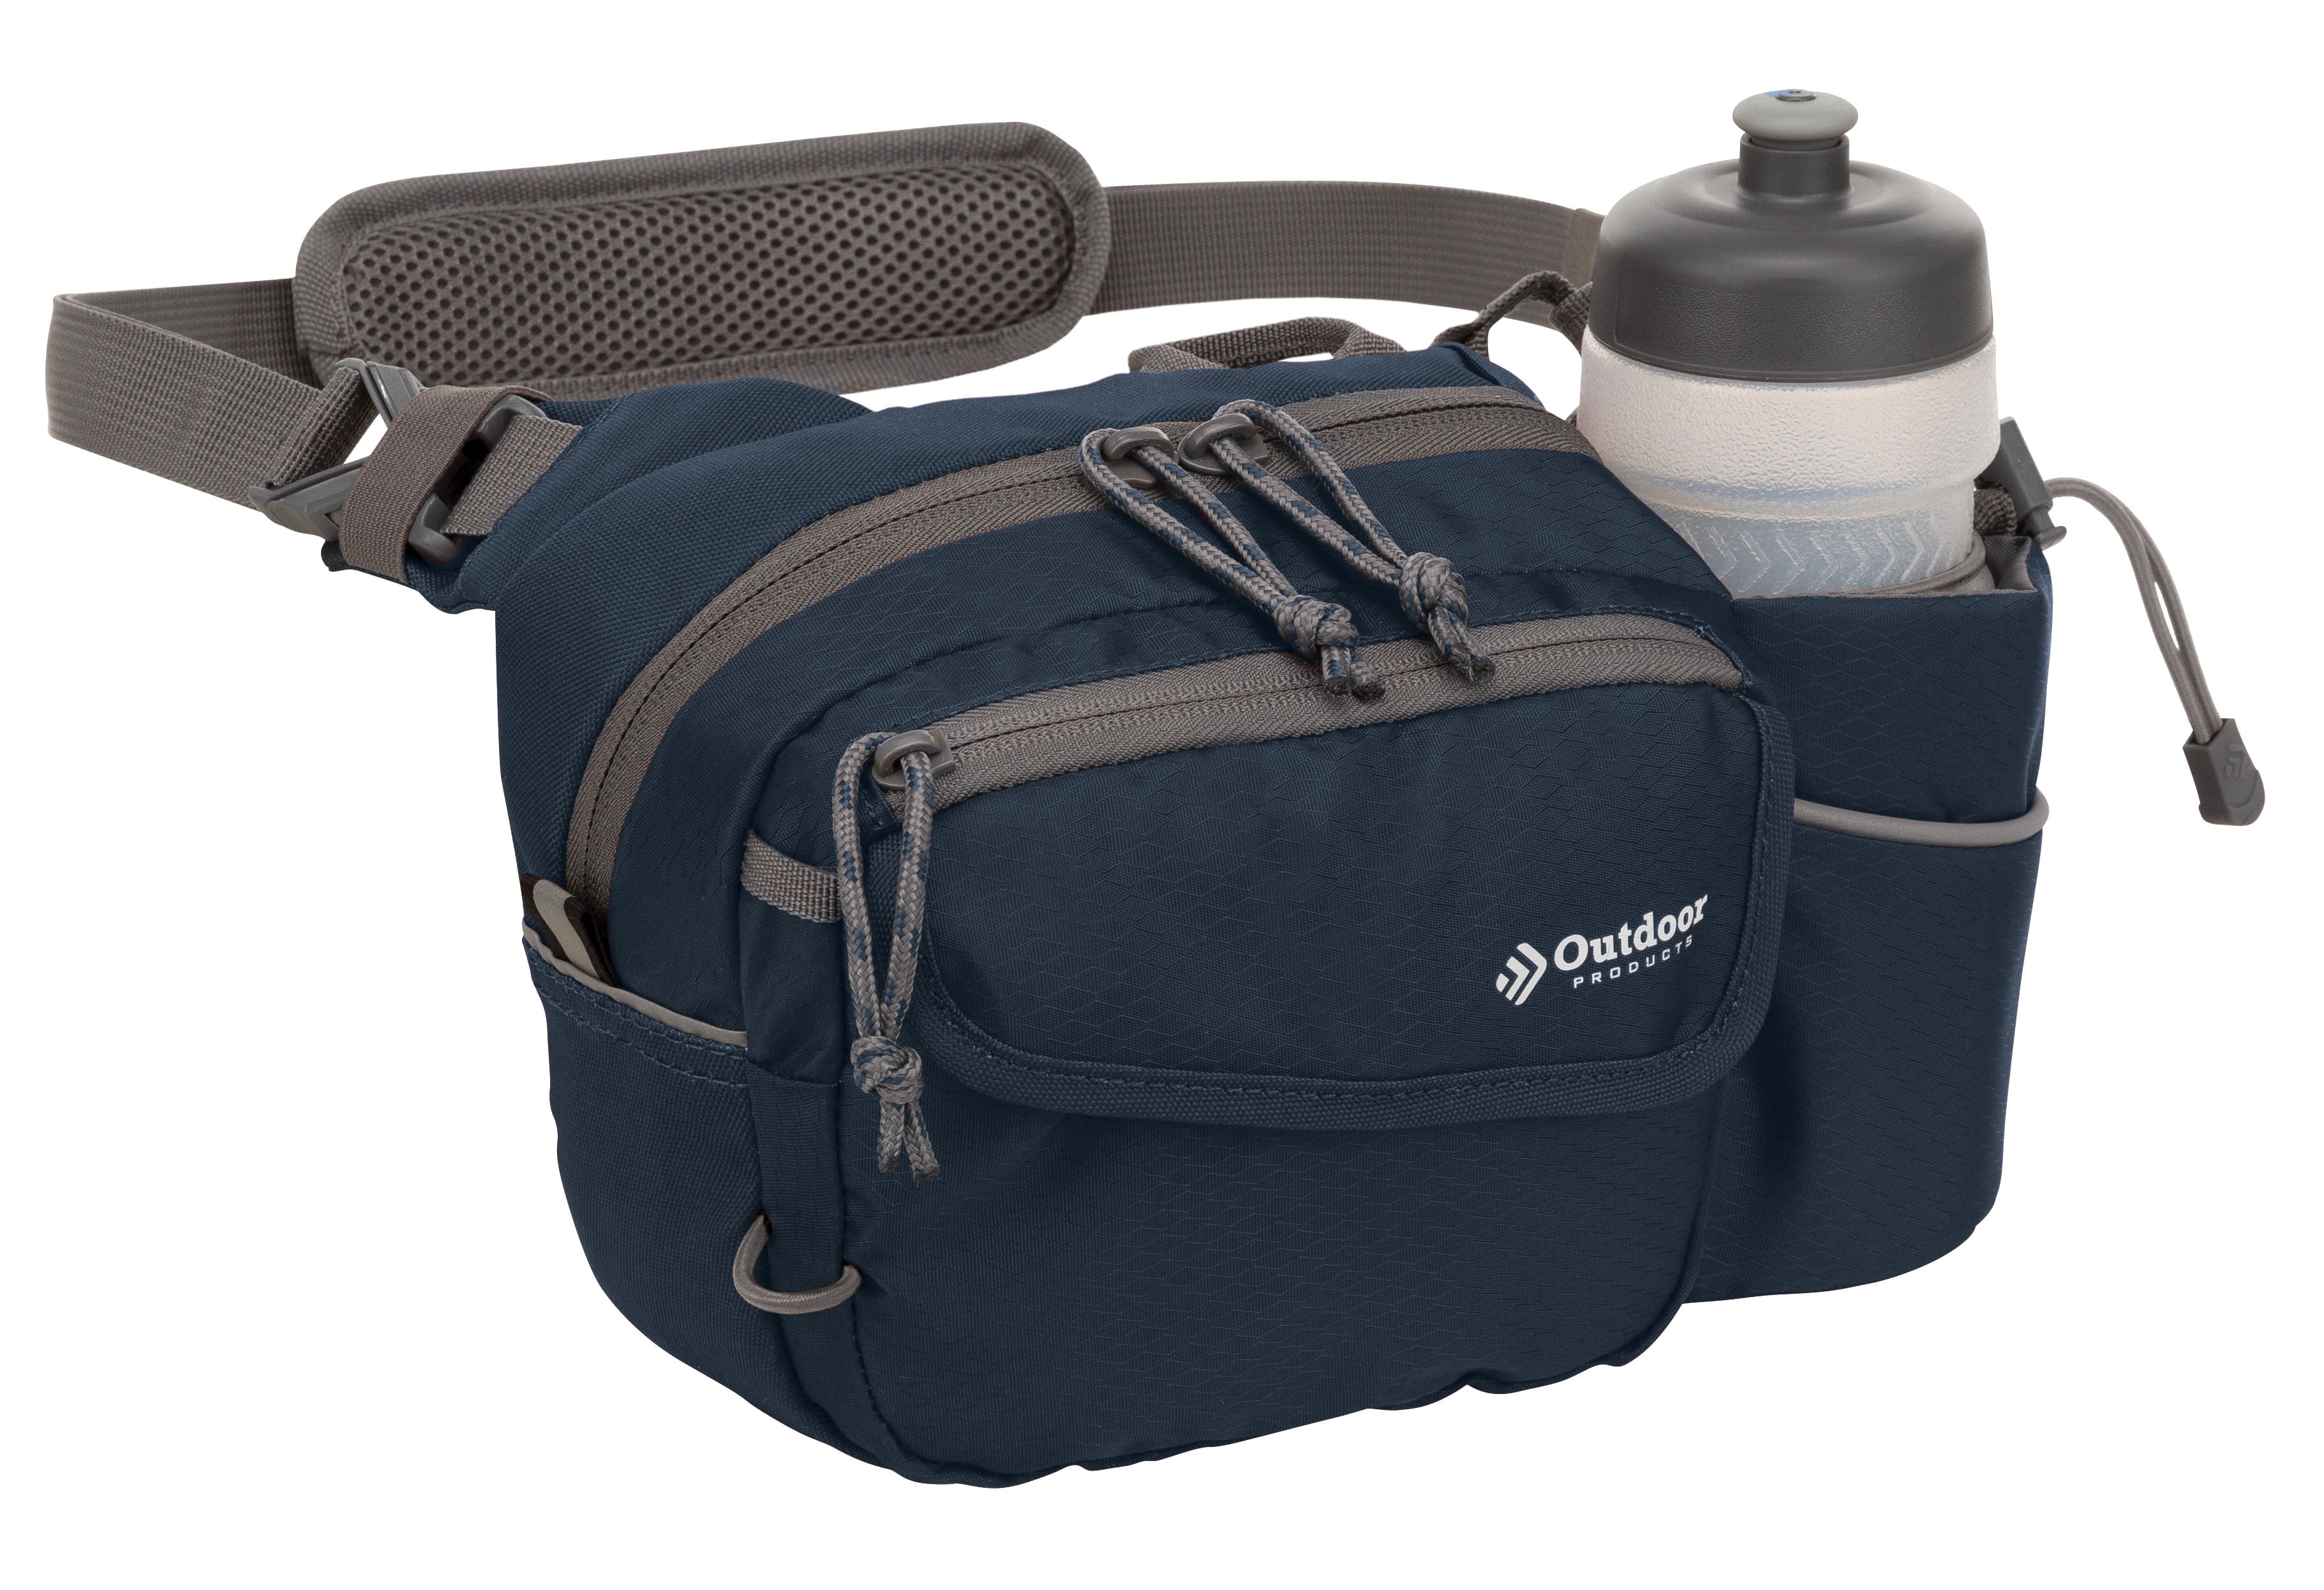 Outdoor Products Melrose 3 Ltr Waist Pack Shoulder Bag Fanny Pack, Blue, Unisex